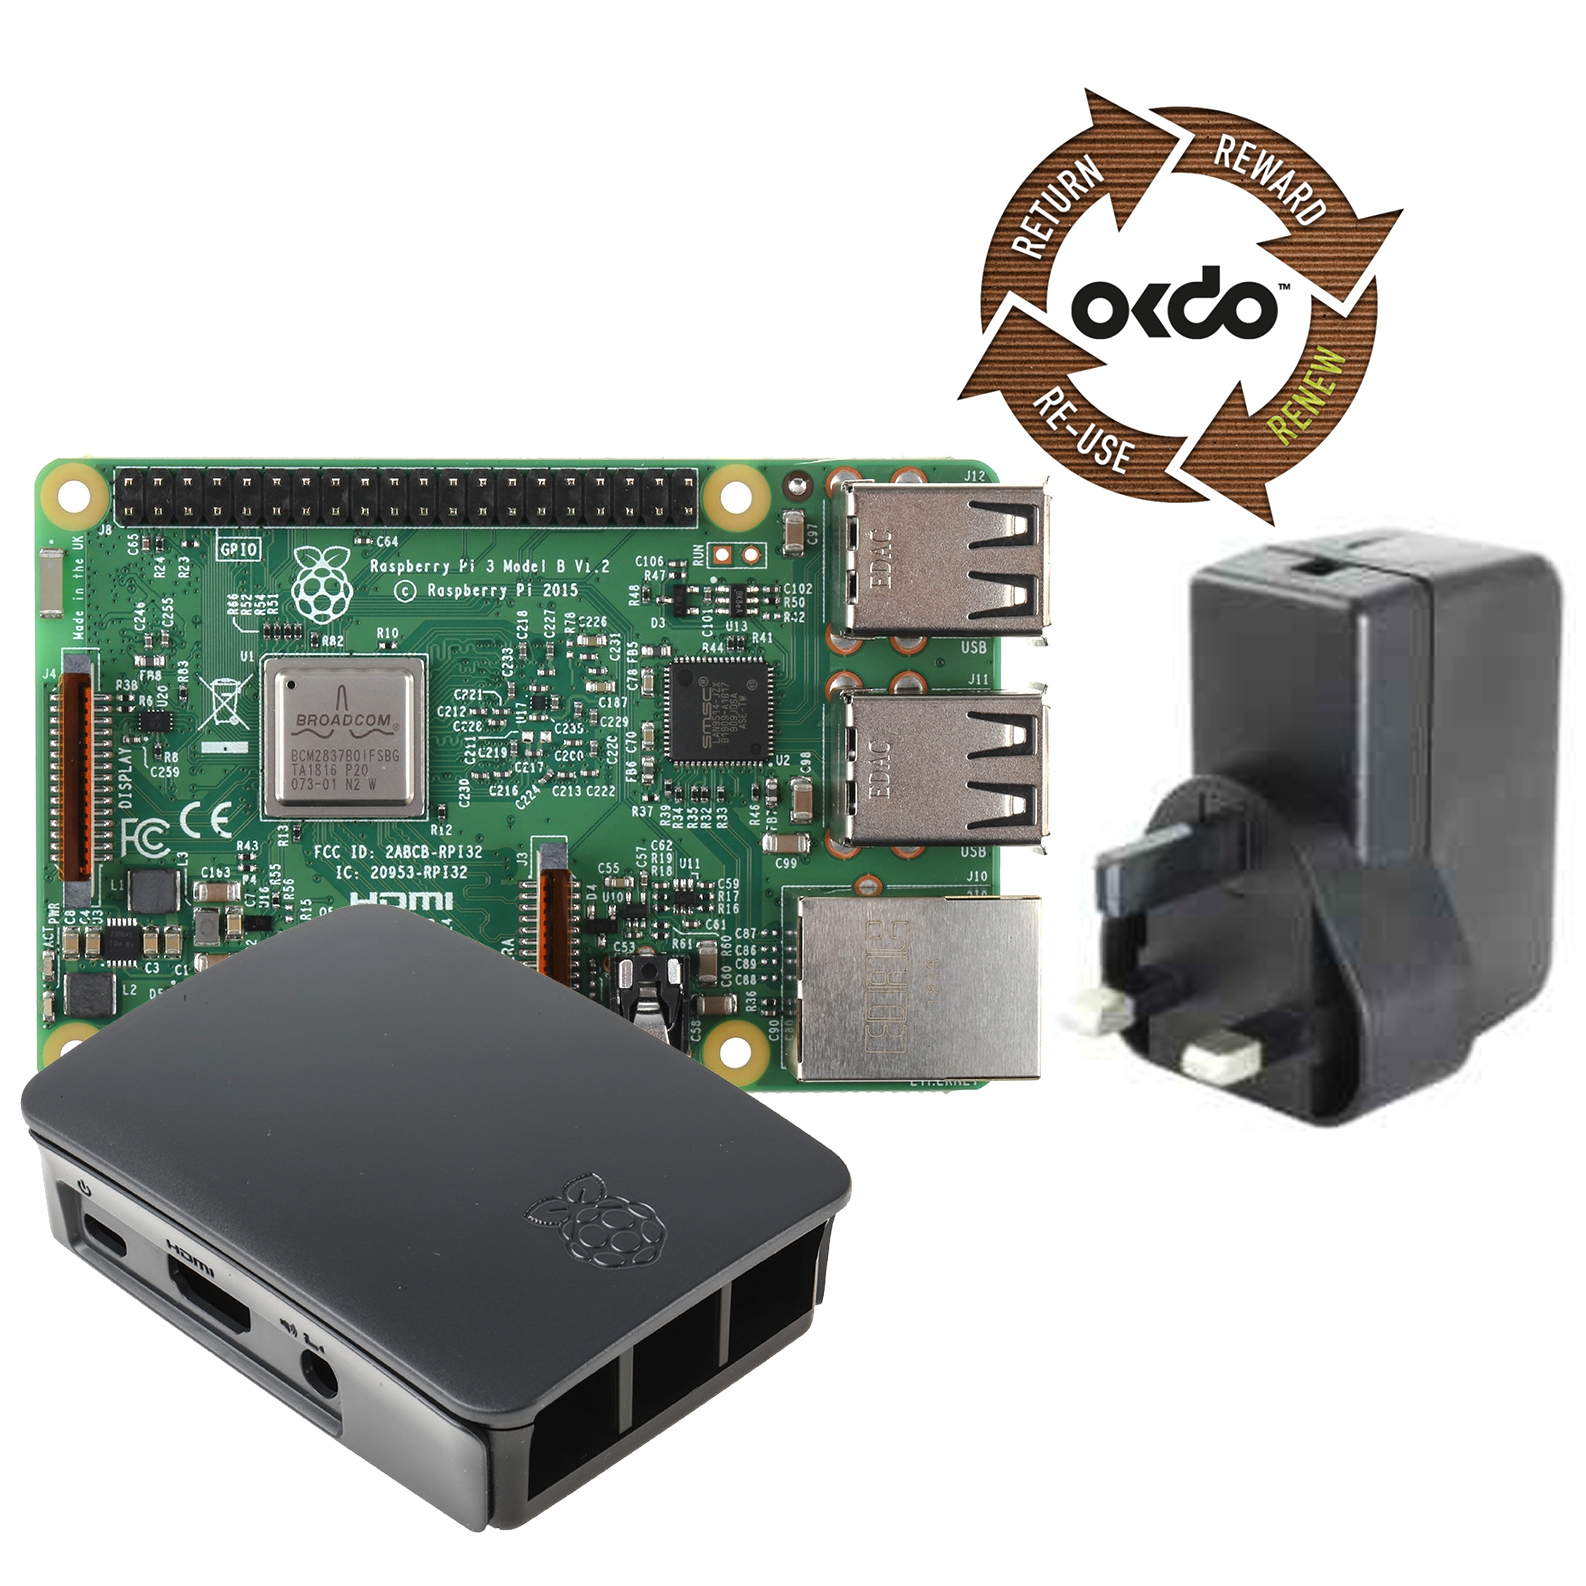 OKdo Renew Raspberry Pi 3 Model B with PSU & Case